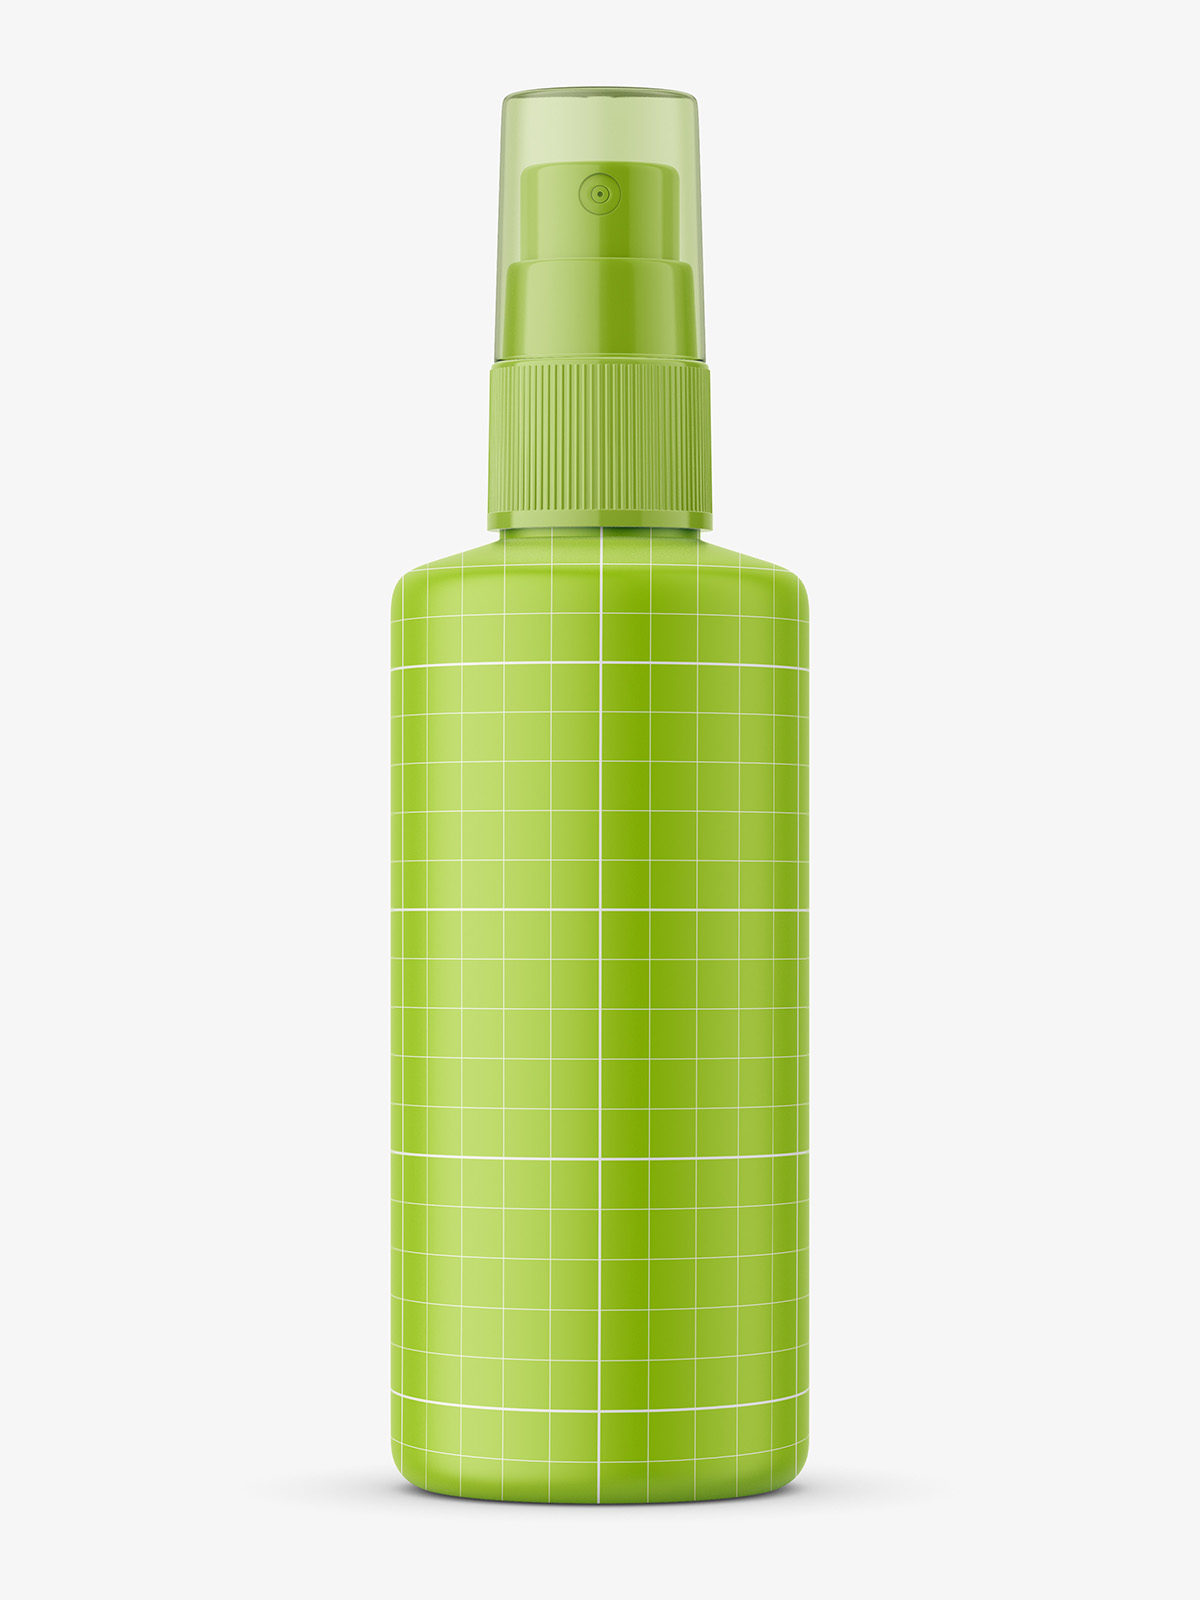 Download Mist Spray Bottle Mockup 100 Ml Smarty Mockups PSD Mockup Templates